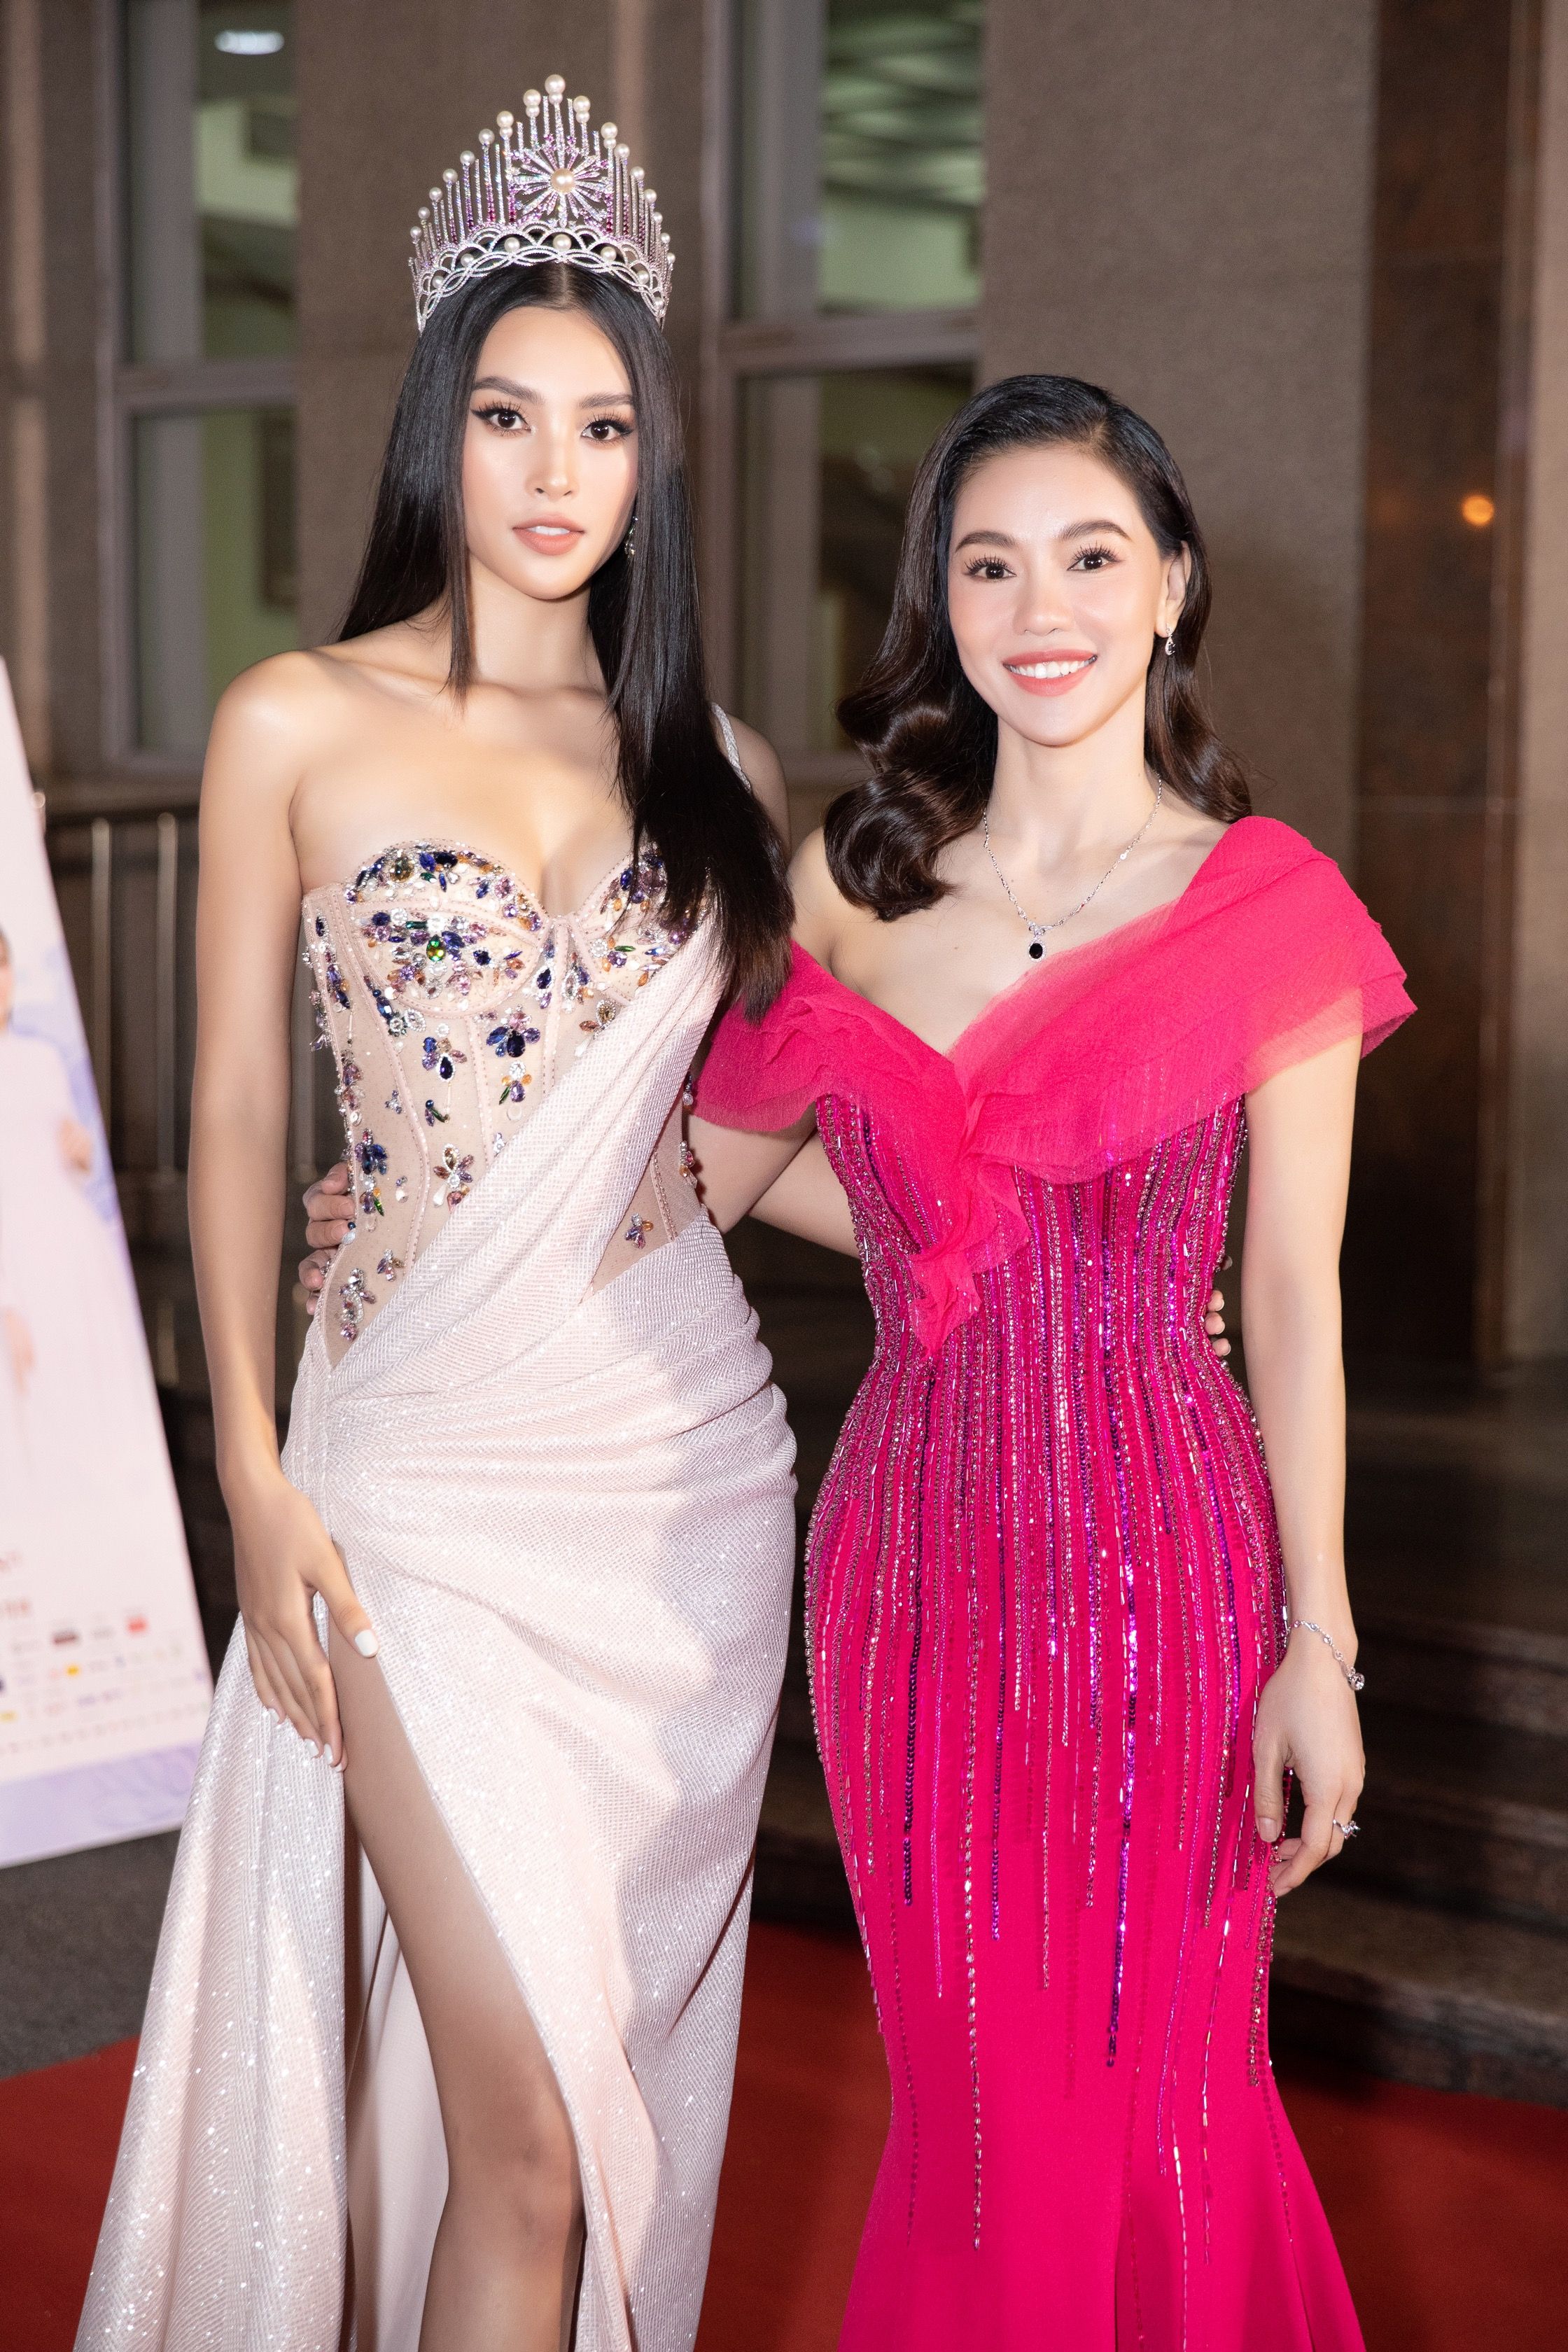 Miss Vietnam 2020 - a 'Decade of Beauties'